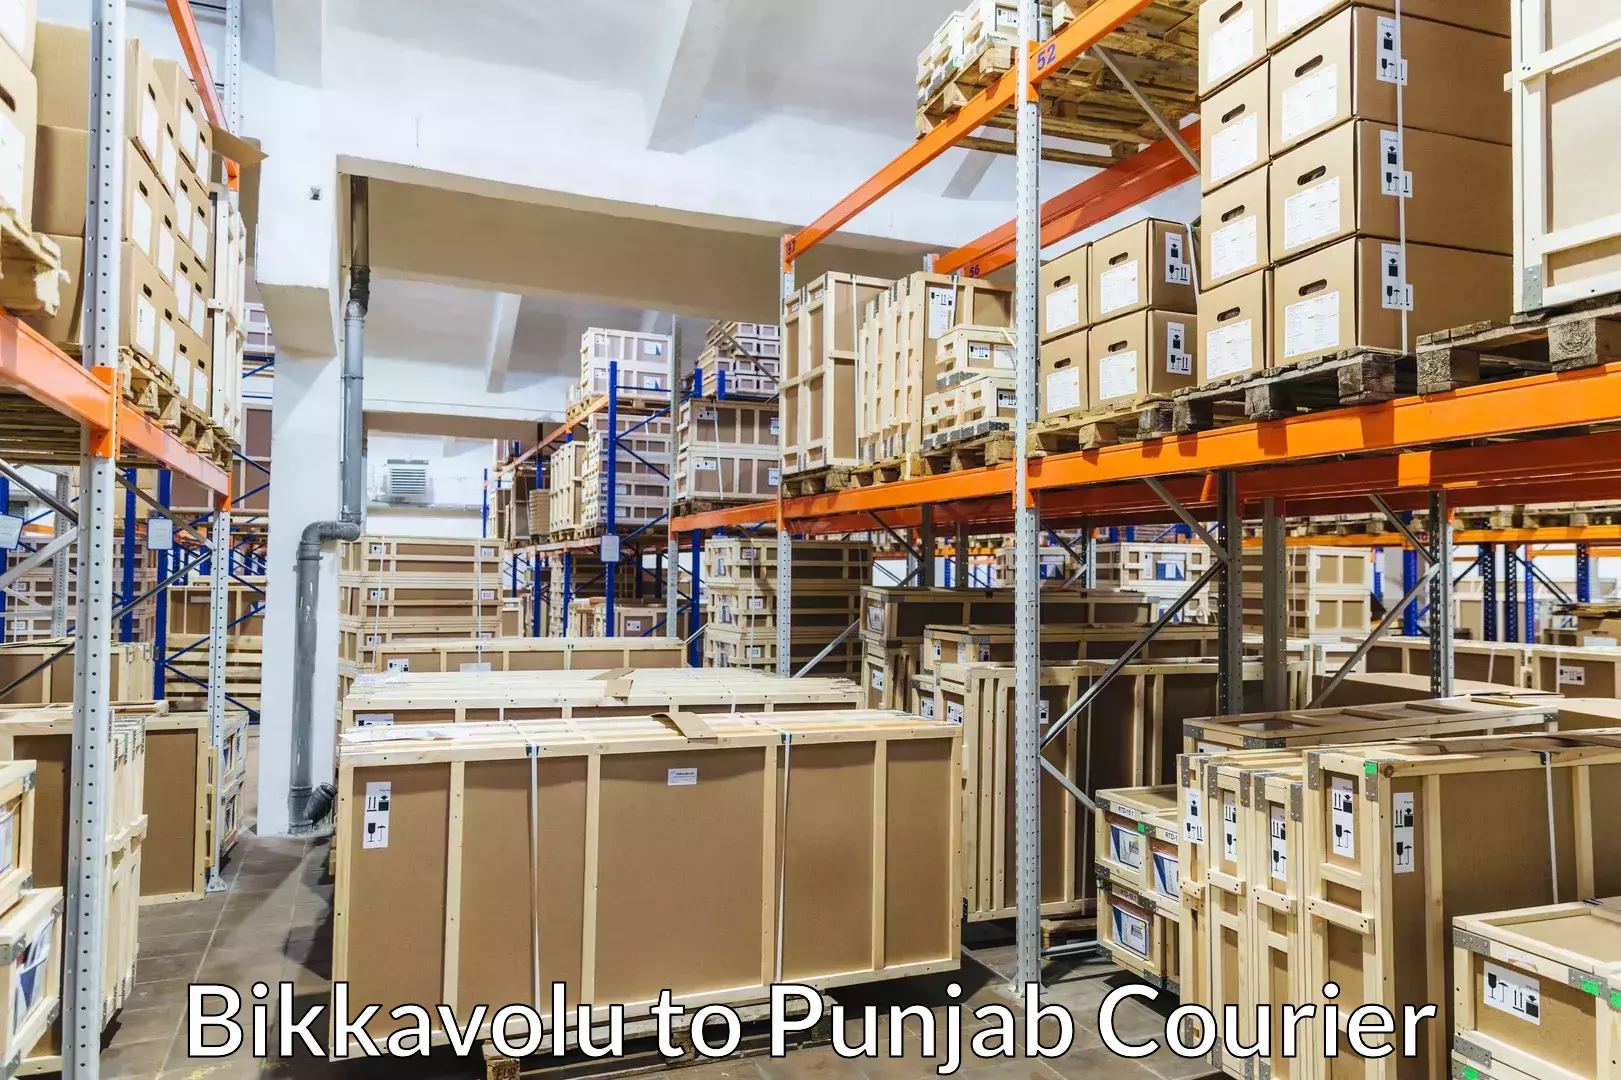 Furniture moving solutions in Bikkavolu to Punjab